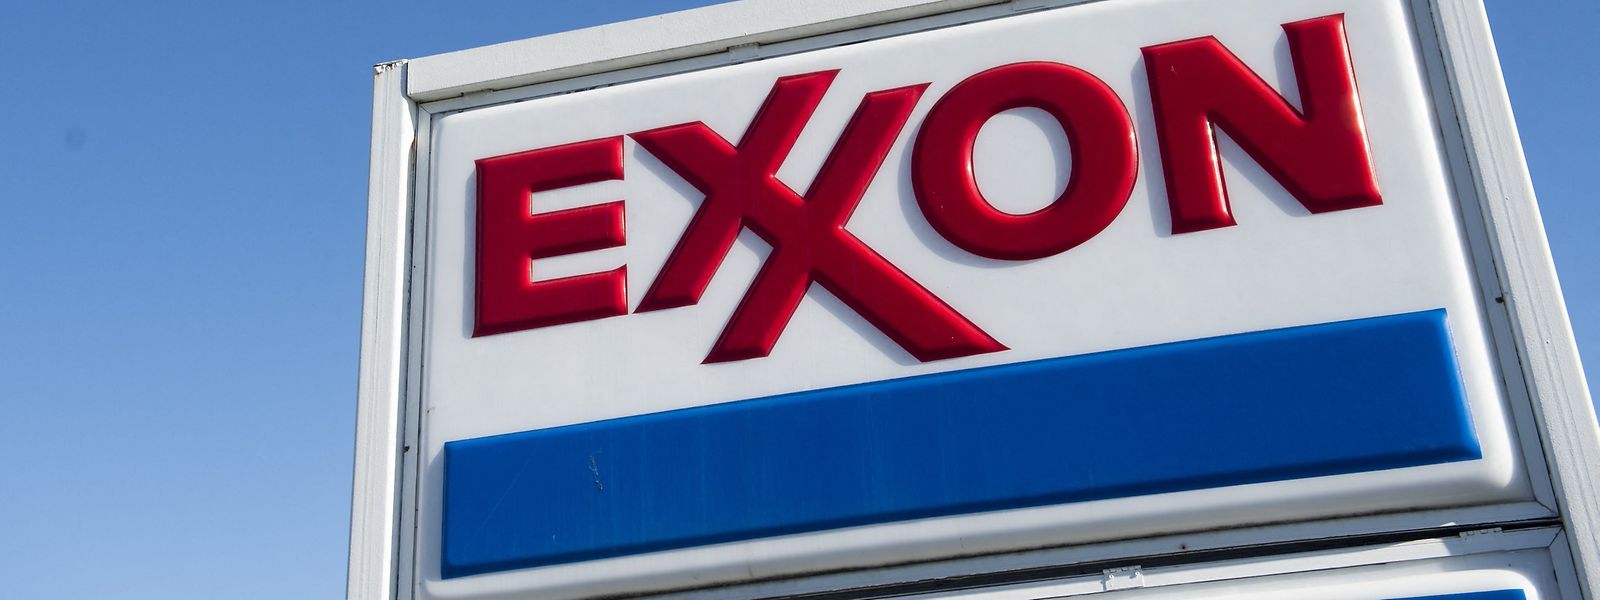 Die Klage des US-Energieriesen ExxonMobil gegen die Europäische Union wird die befristete Steuer auf unerwartete Gewinne von Ölkonzernen nicht blockieren, so ein EU-Sprecher.